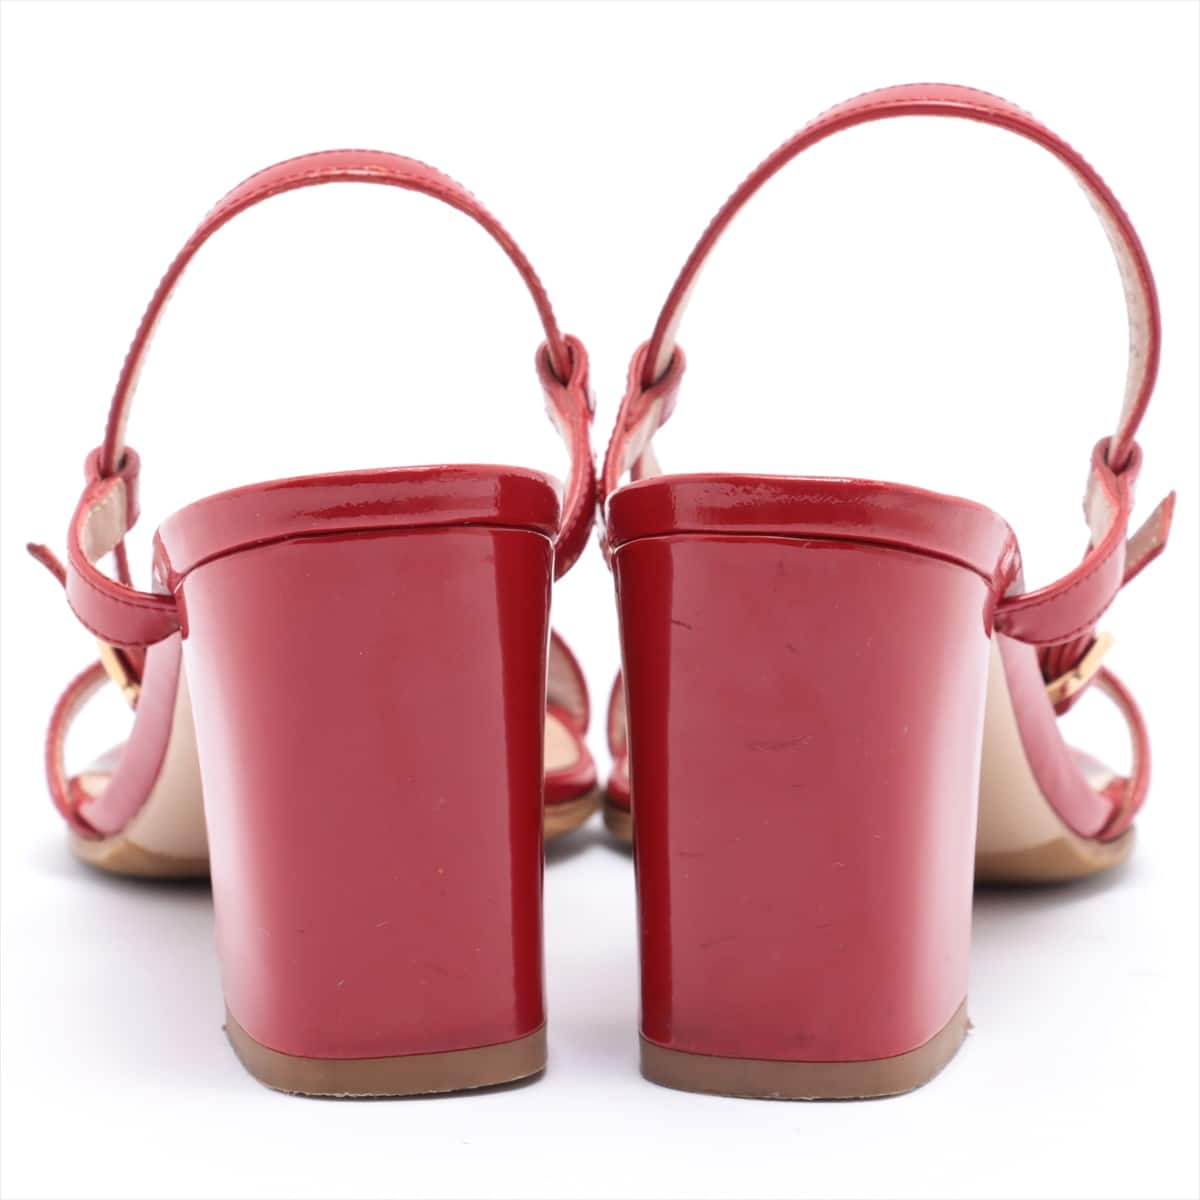 Ferragamo Patent leather Sandals 5.5 Ladies' Red Has half rubber